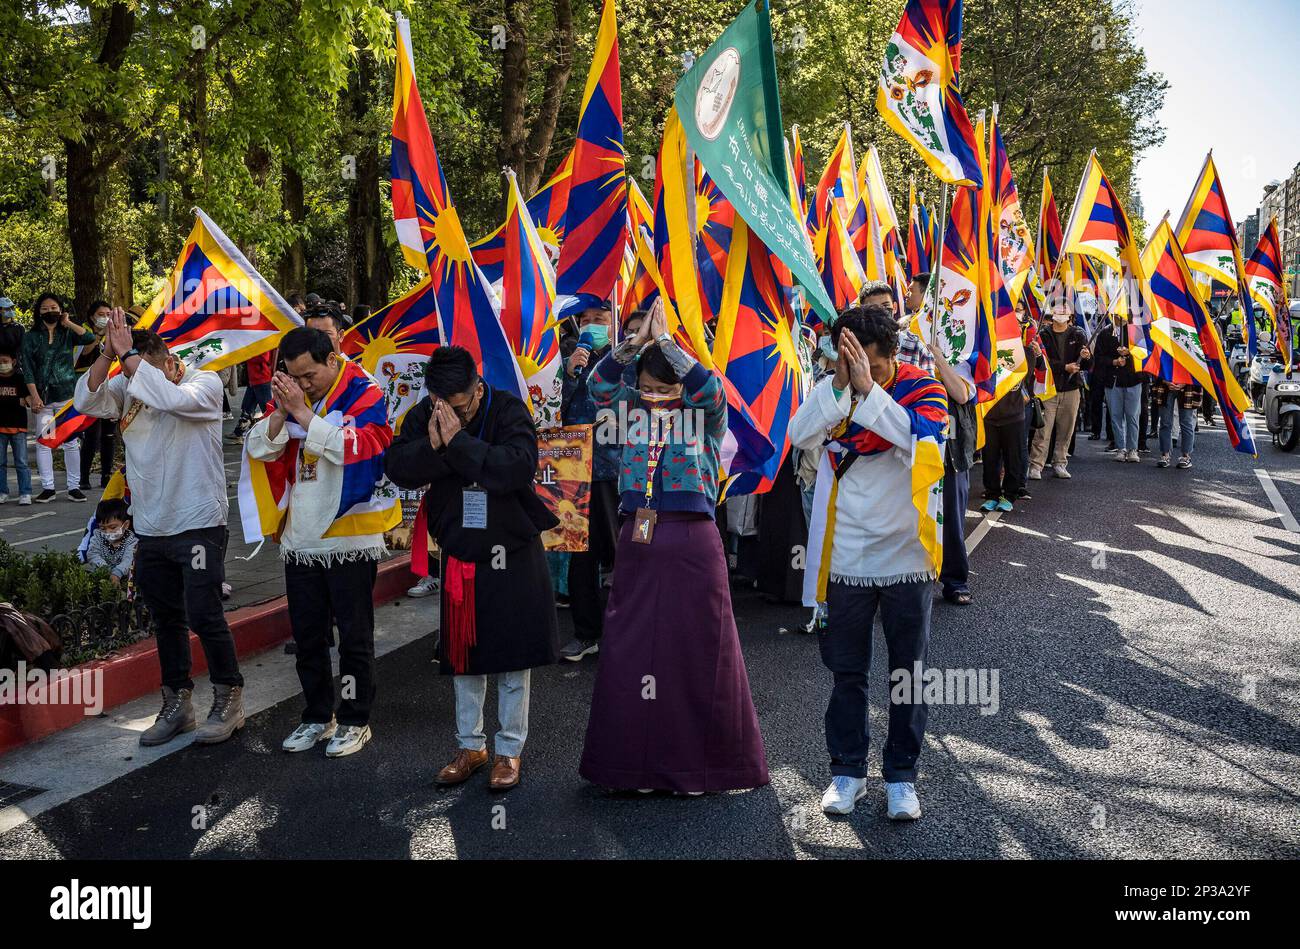 Taipeh. 05. März 2023. Tibeter und Taiwanesen, die die tibetische Freiheit unterstützen, protestieren am 05./03/2023. Anlässlich des 64. Jahrestages des Aufstands in Tibet auf den Straßen Taipeh, Taiwan. Die Demonstranten fordern, dass die chinesischen Behörden aufhören, Menschen in Tibet zu unterdrücken, und dass der Dalai Lama nach Lhasa zurückkehrt. Von Wiktor Dabkowski Credit: dpa/Alamy Live News Stockfoto